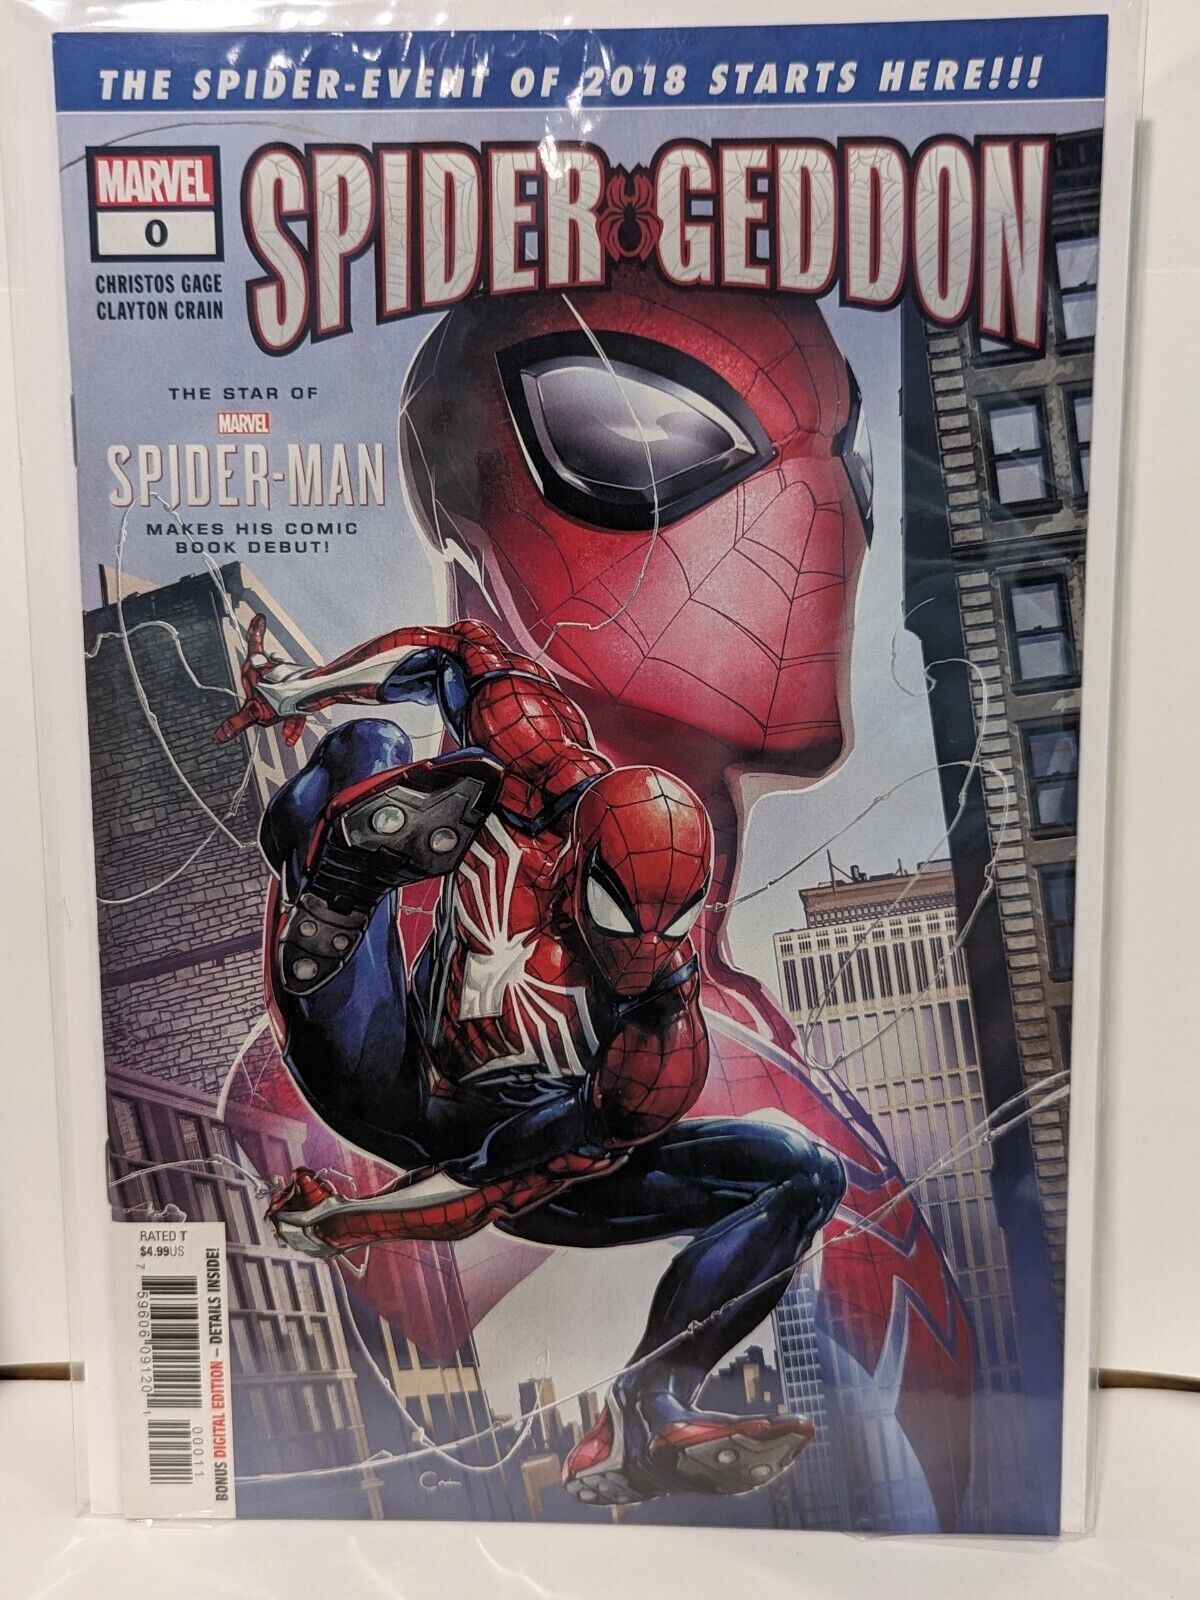 Amazing Spider-man Spider-Geddon #0 Clayton Crain Cvr NM Marvel Comics